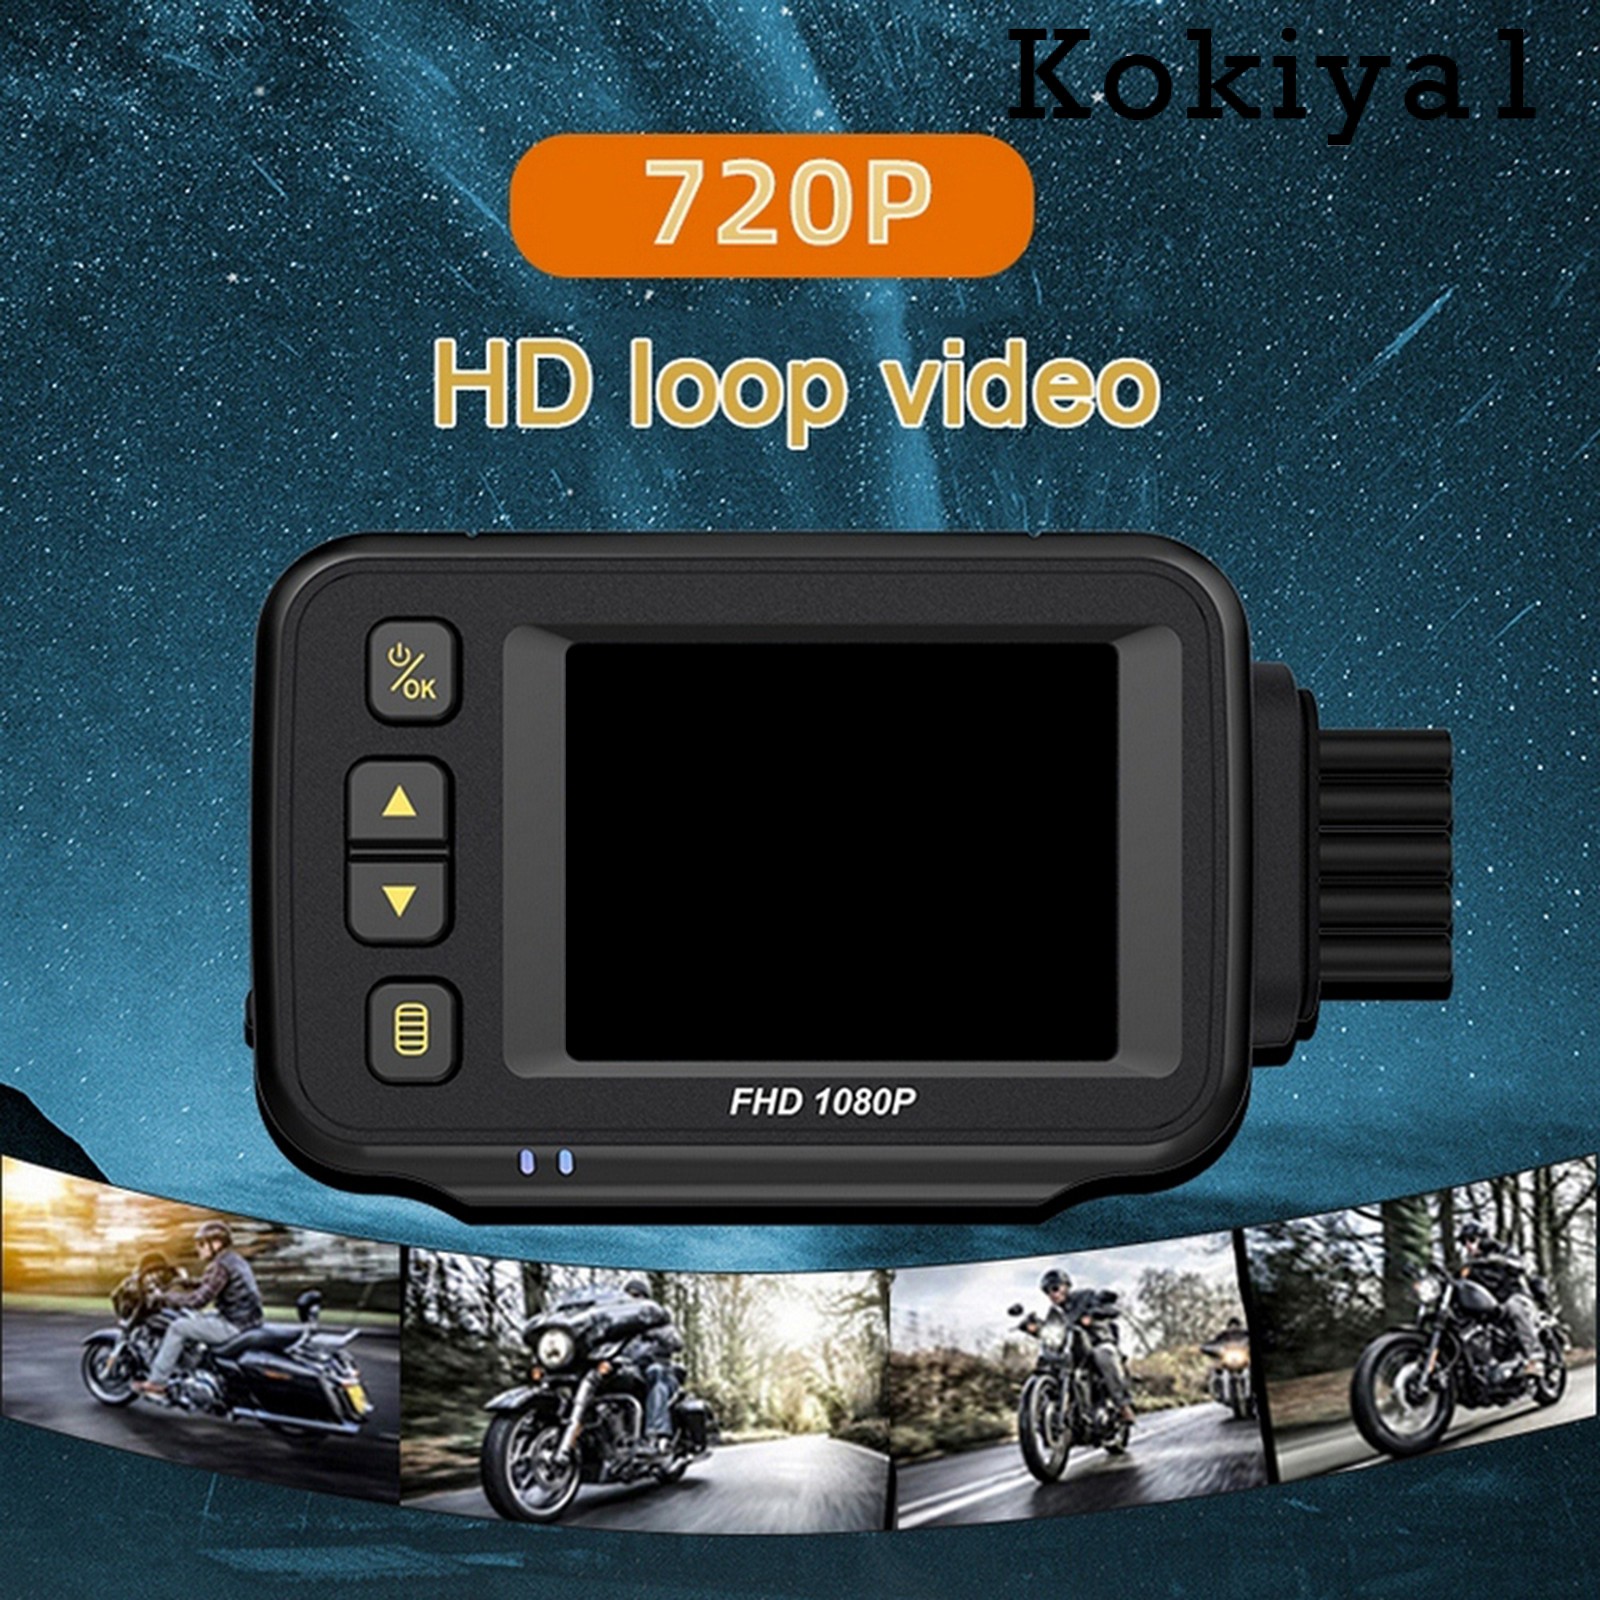 Camera hành trình LCD 2.0" thiết kế chống thấm nước dùng cho xe máy